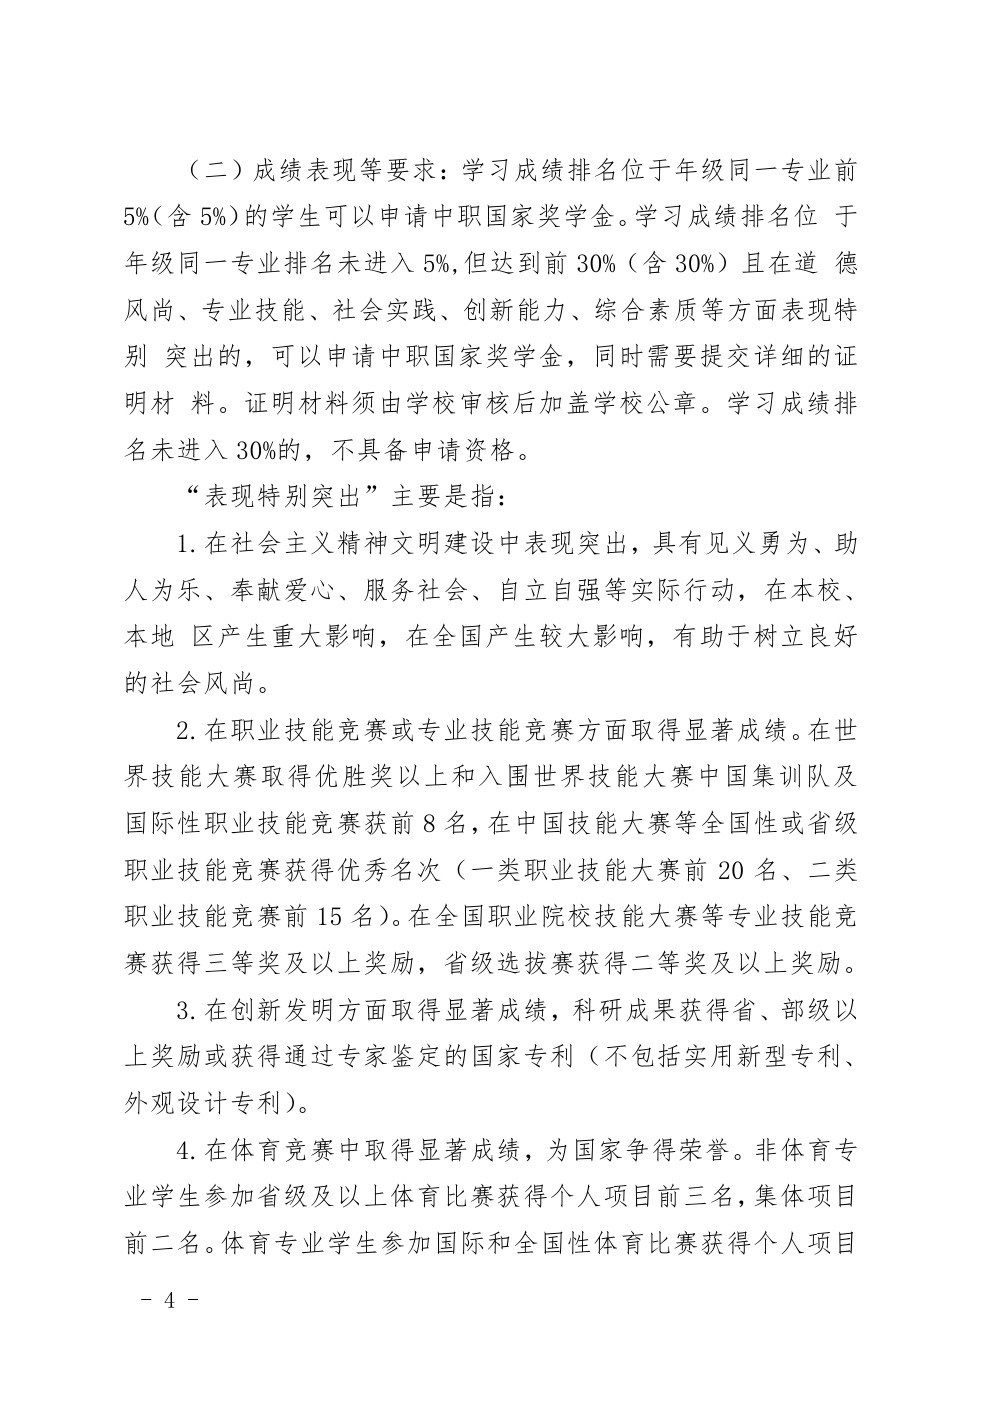 四川省南充卫生学校中等职业教育国家奖学金评审暂行办法